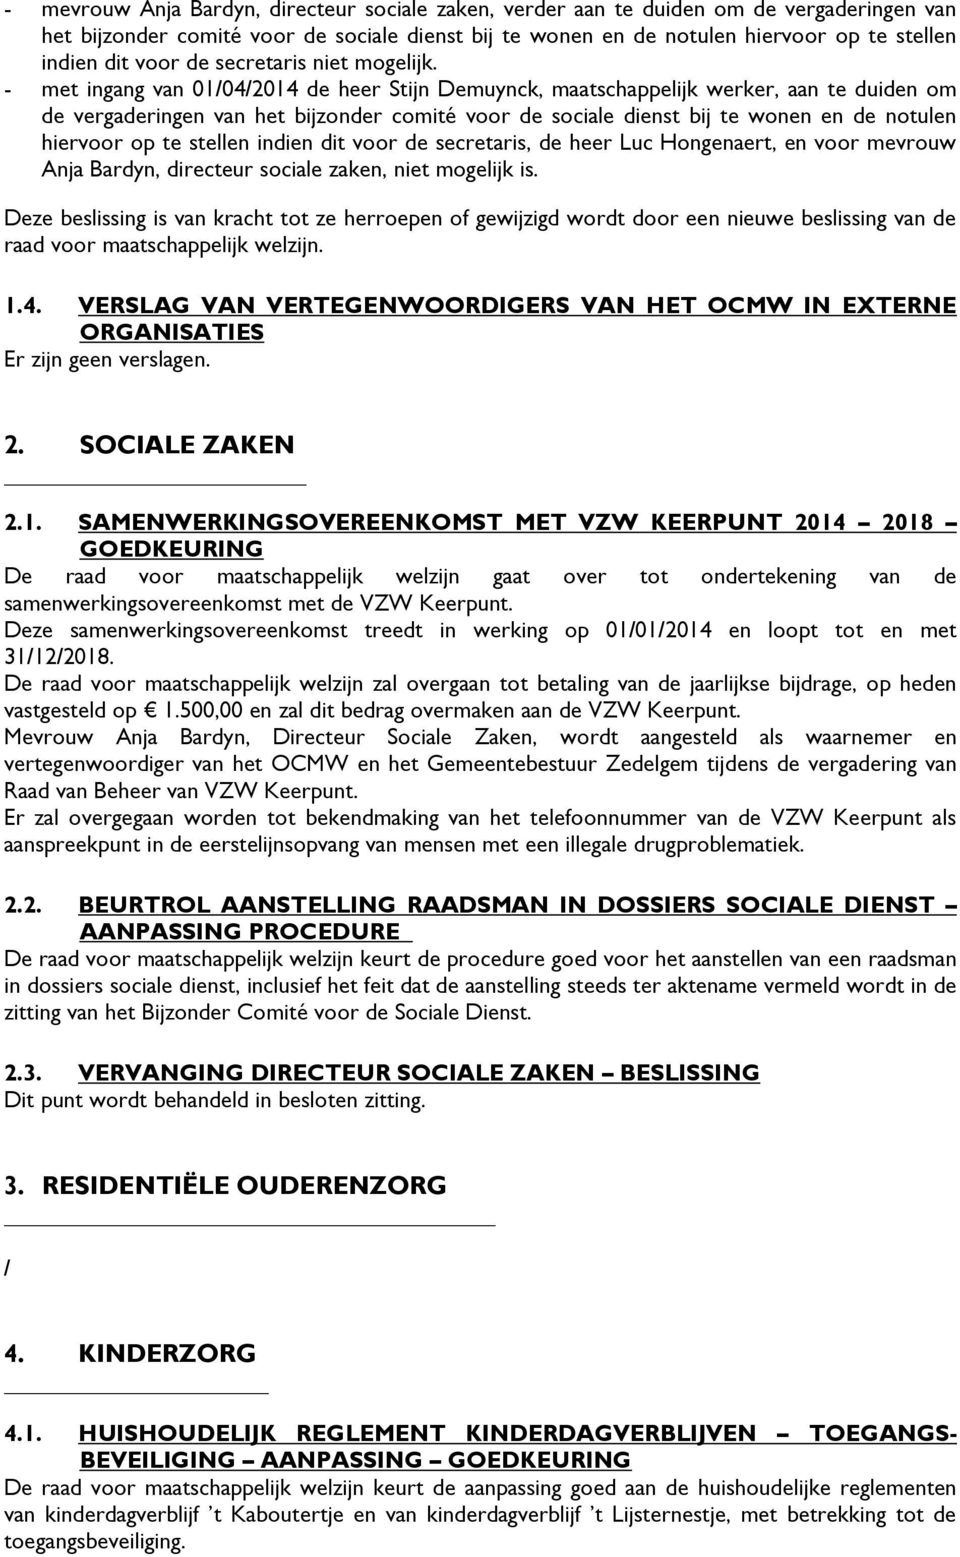 - met ingang van 01/04/2014 de heer Stijn Demuynck, maatschappelijk werker, aan te duiden om de vergaderingen van het bijzonder comité voor de sociale dienst bij te wonen en de notulen hiervoor op te